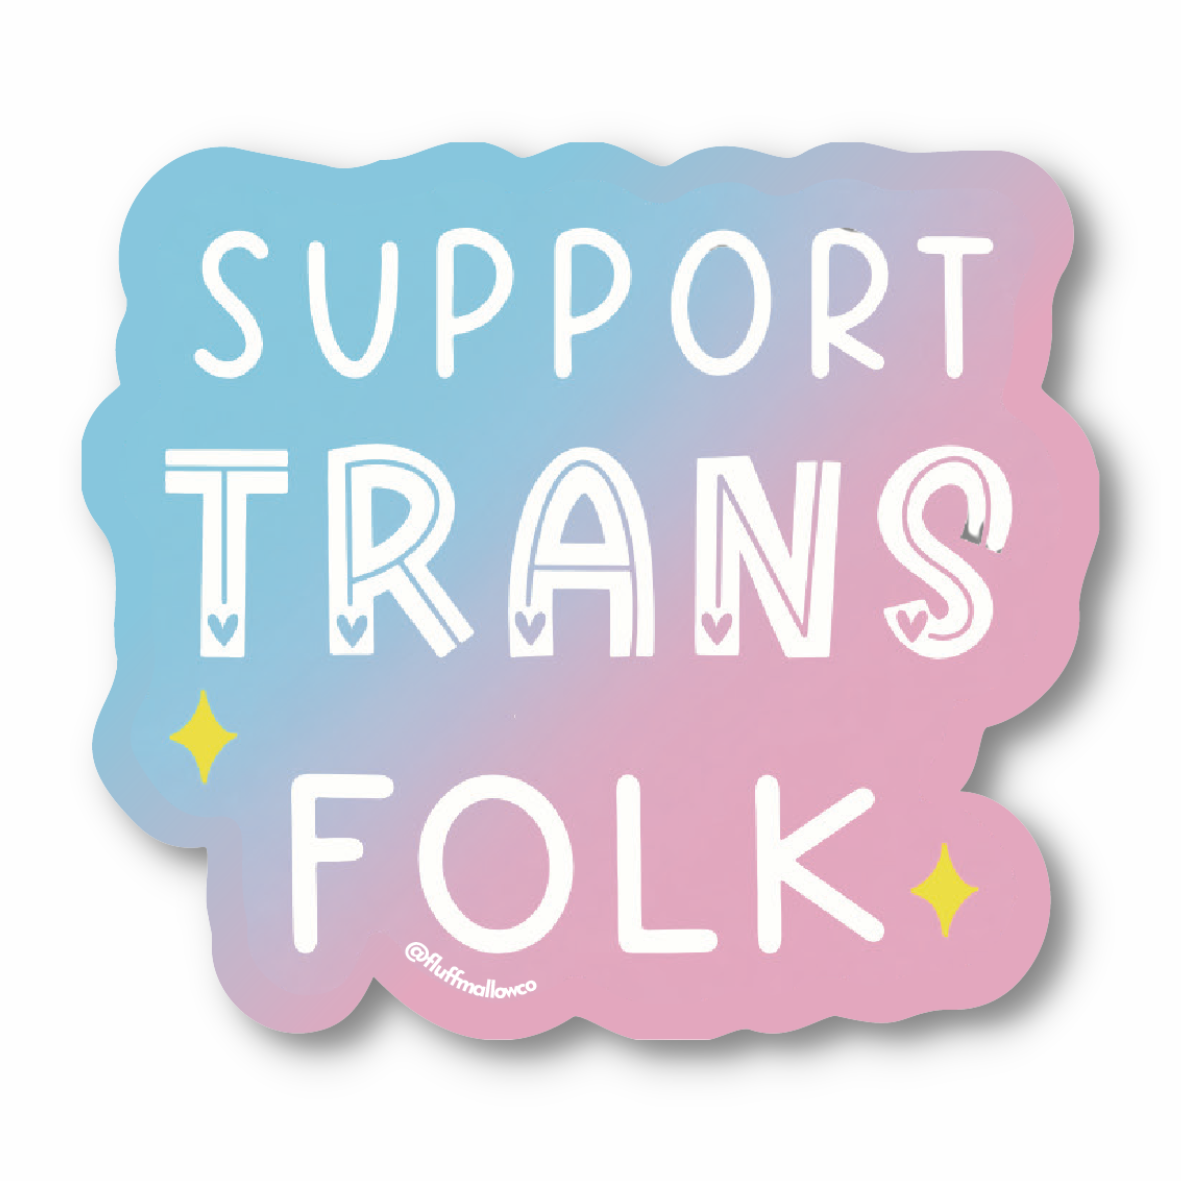 Support trans folk vinyl sticker